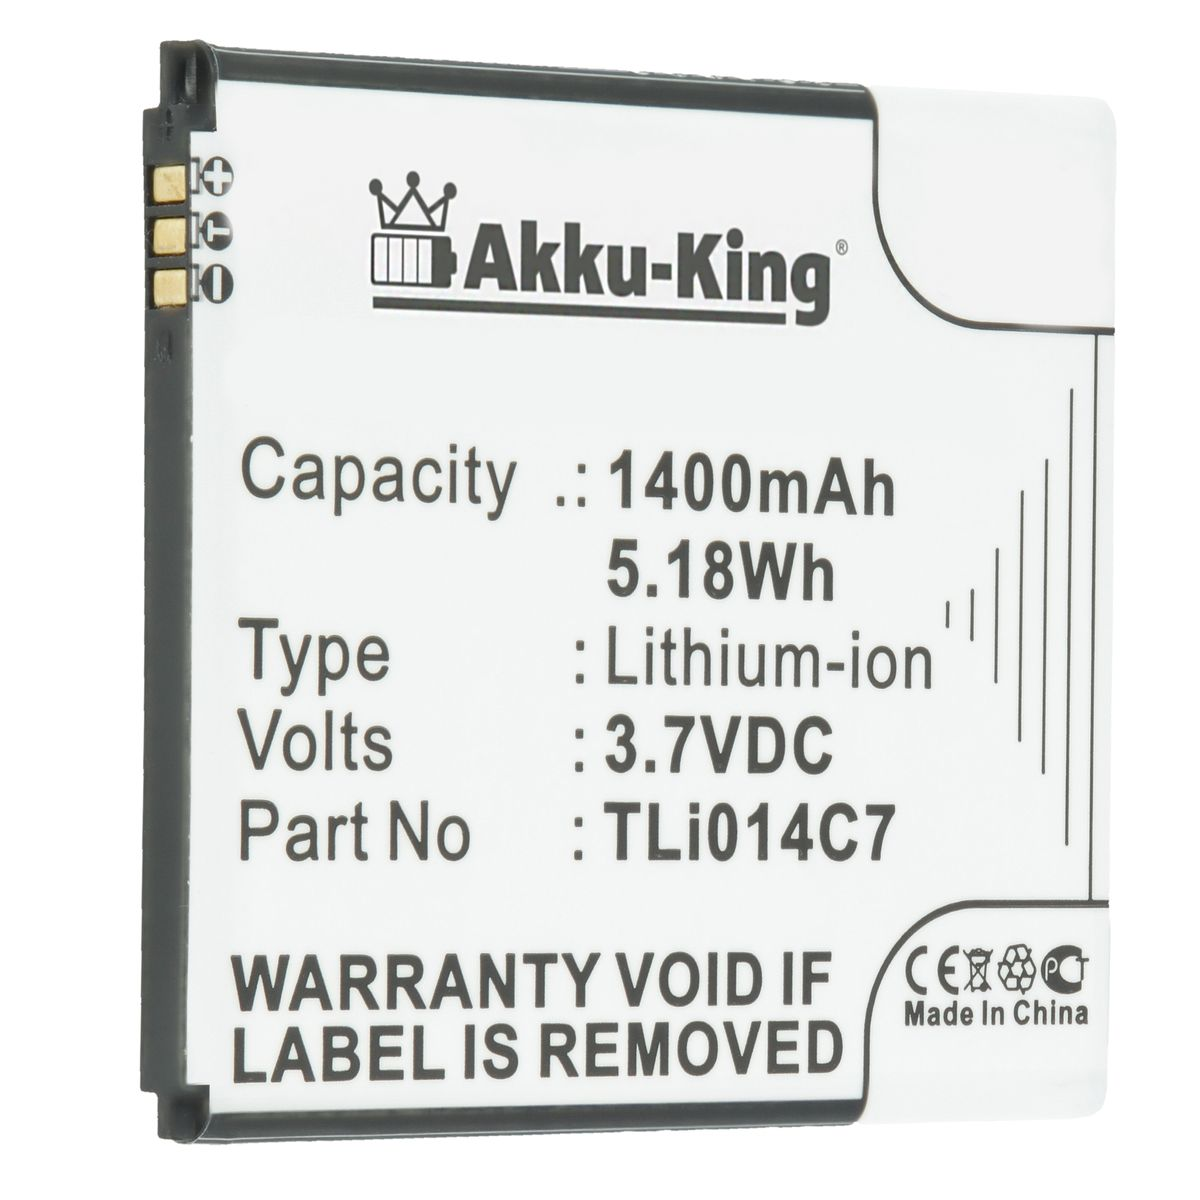 Volt, 3.7 Handy-Akku, Akku Alcatel TLi014C7 AKKU-KING Li-Ion 1400mAh für